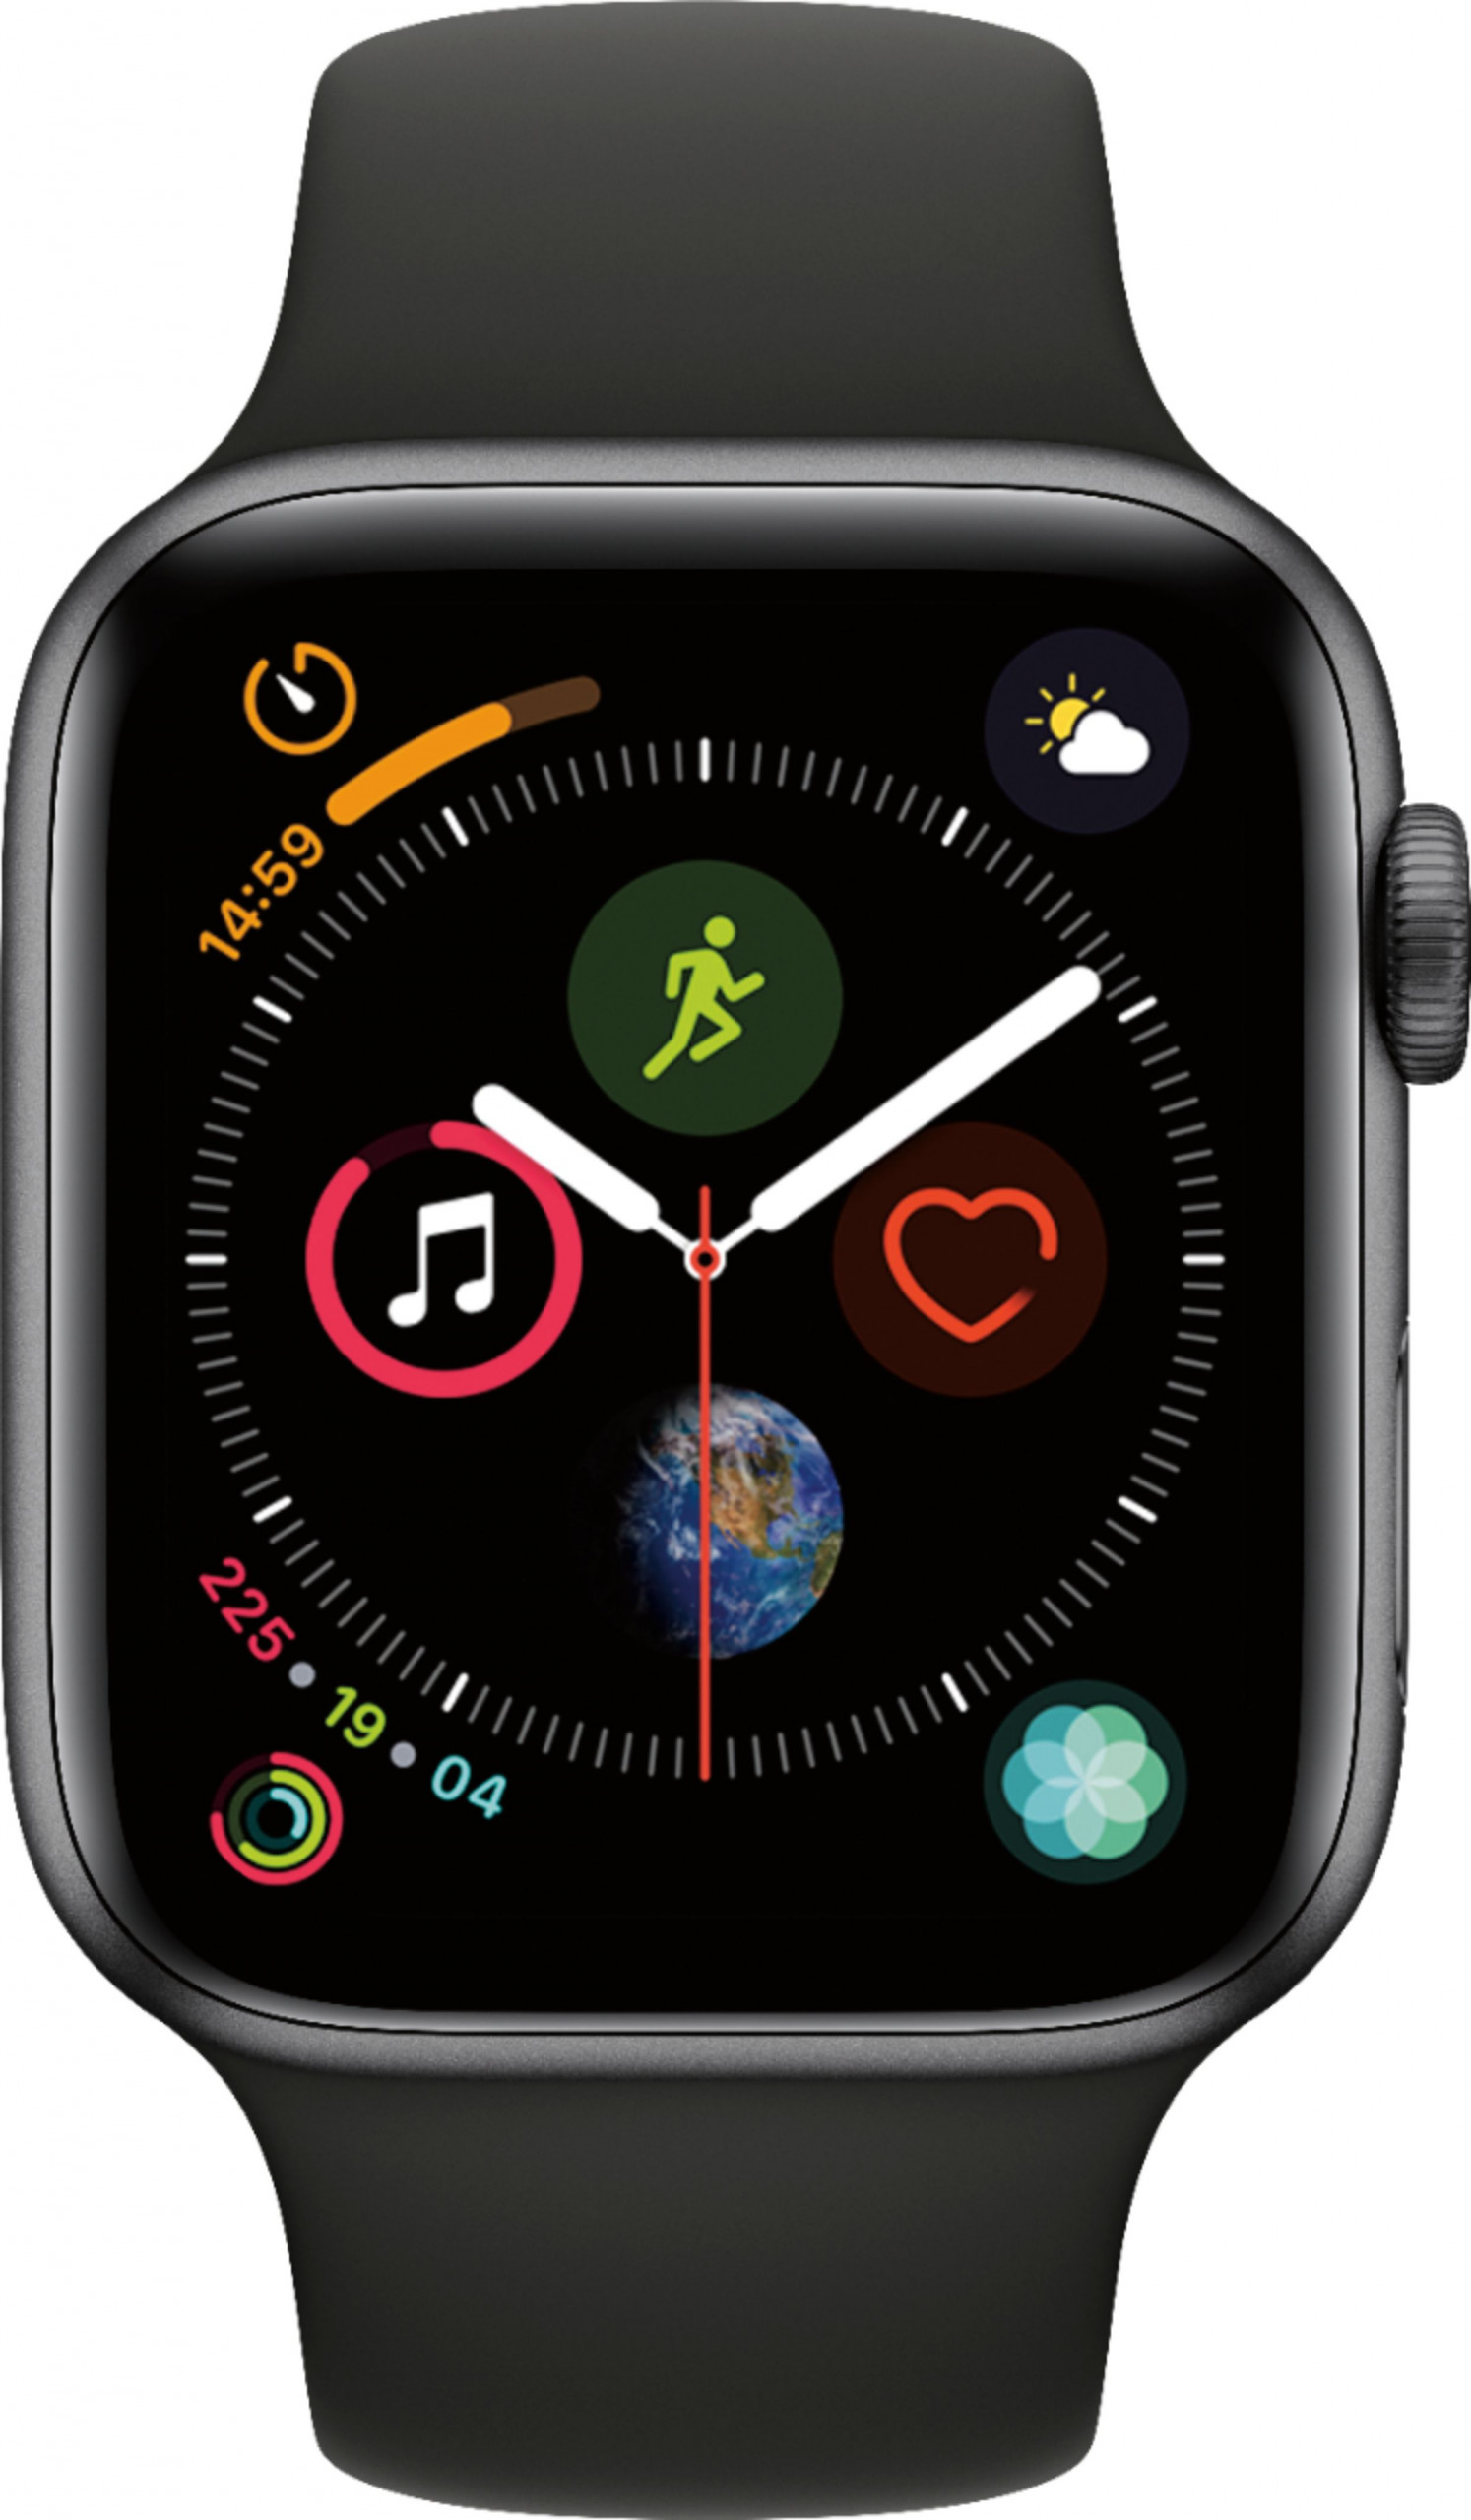 Apple-Watch-Series4-Img0-scaled-1.jpg